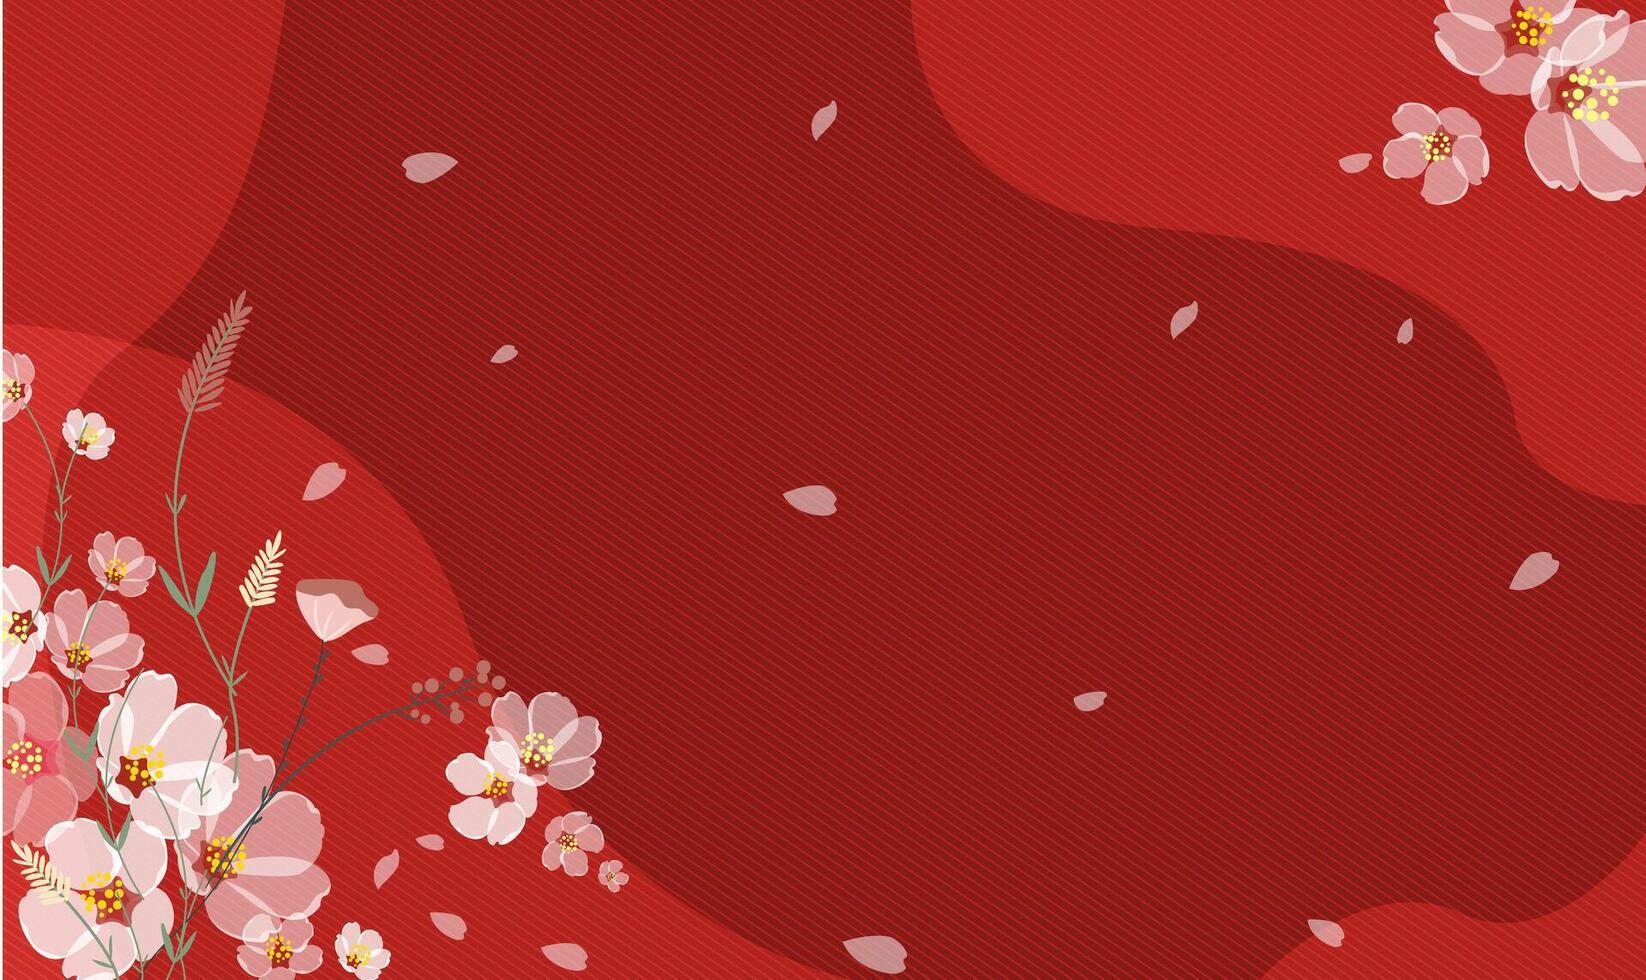 körsbär blomma rosa plommon blomma i röd bakgrund vektor